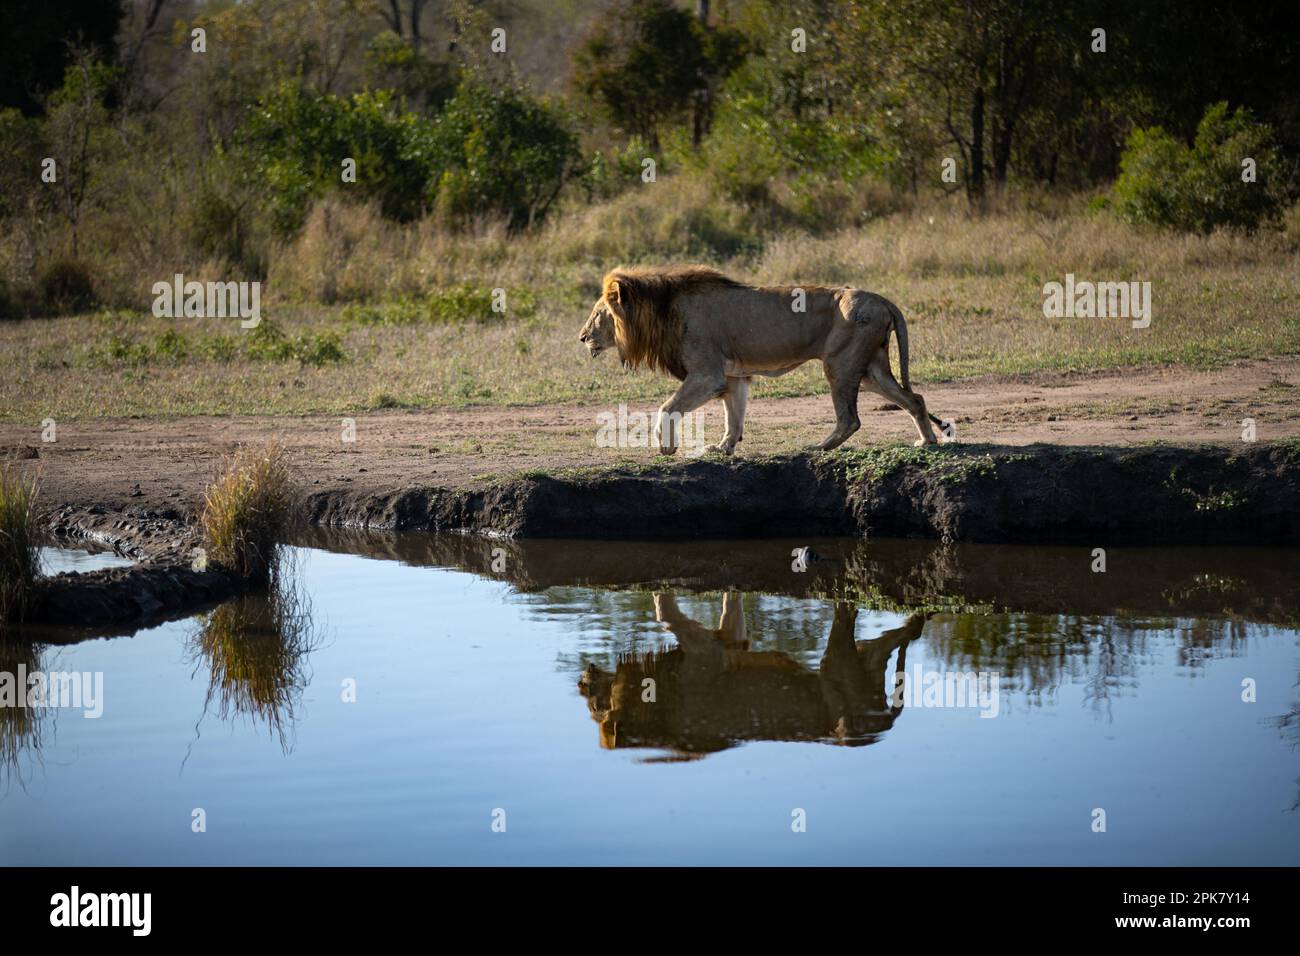 Un lion mâle, Panthera leo, marchant à côté d'un barrage, réfléchissant dans l'eau. Banque D'Images